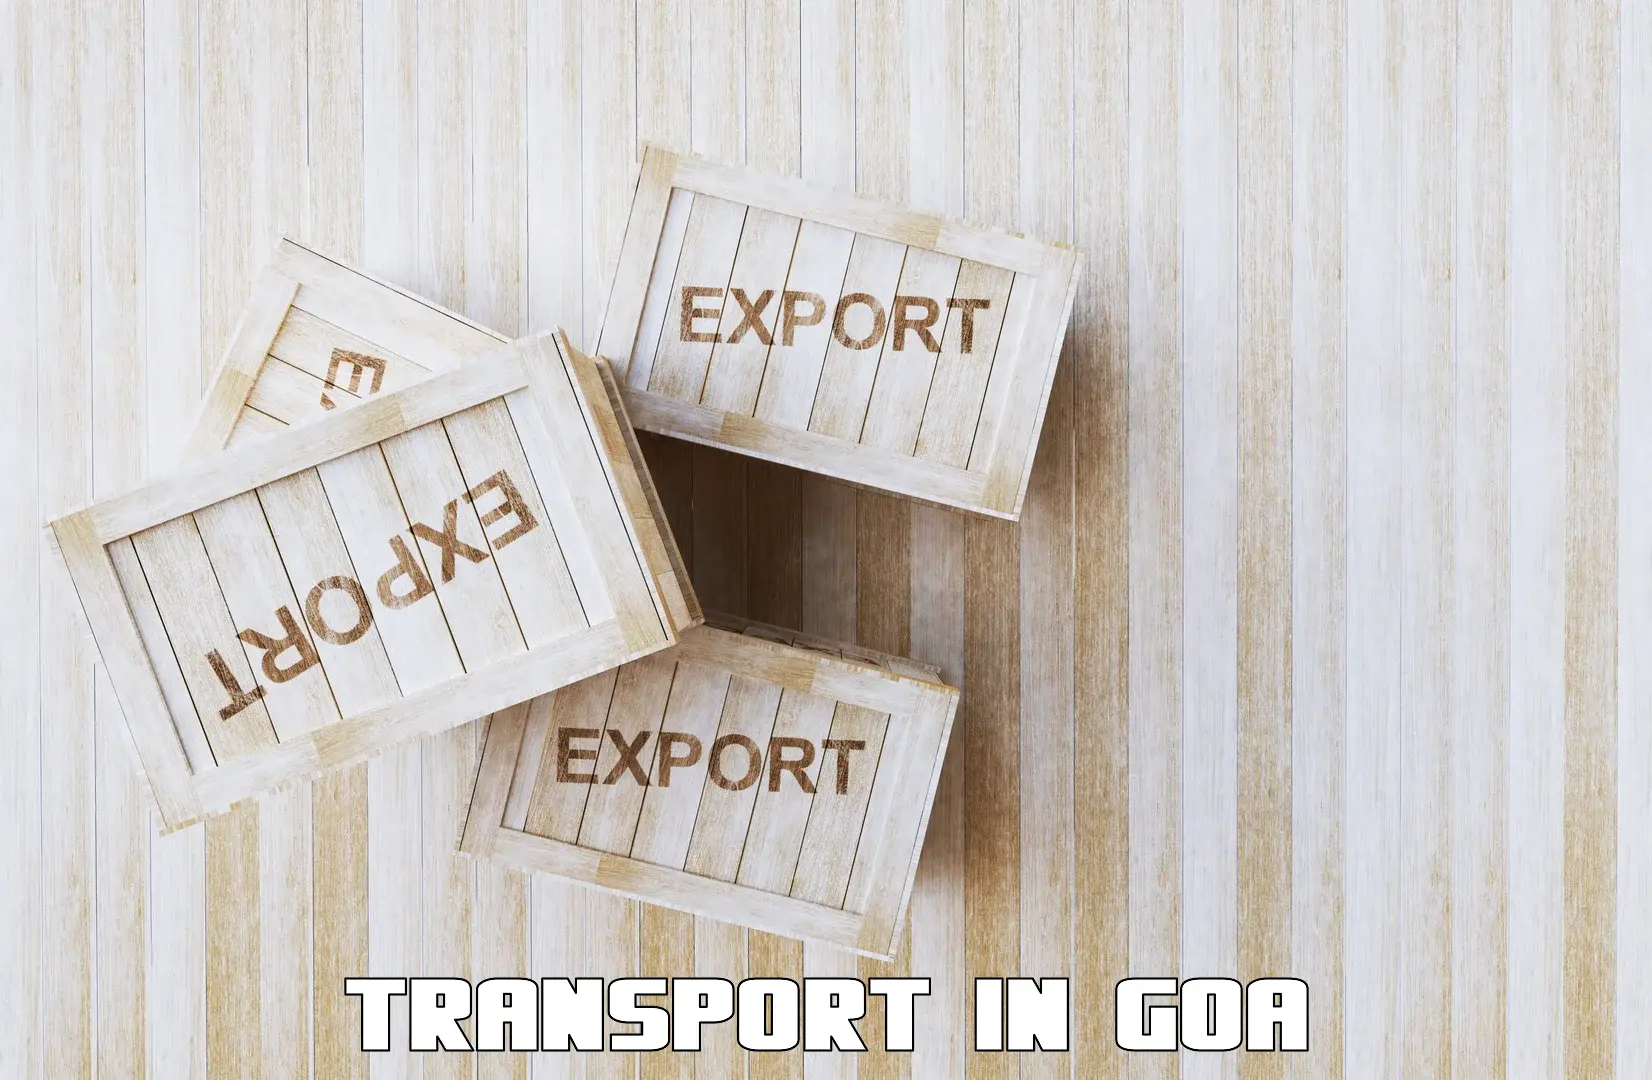 Furniture transport service in Goa